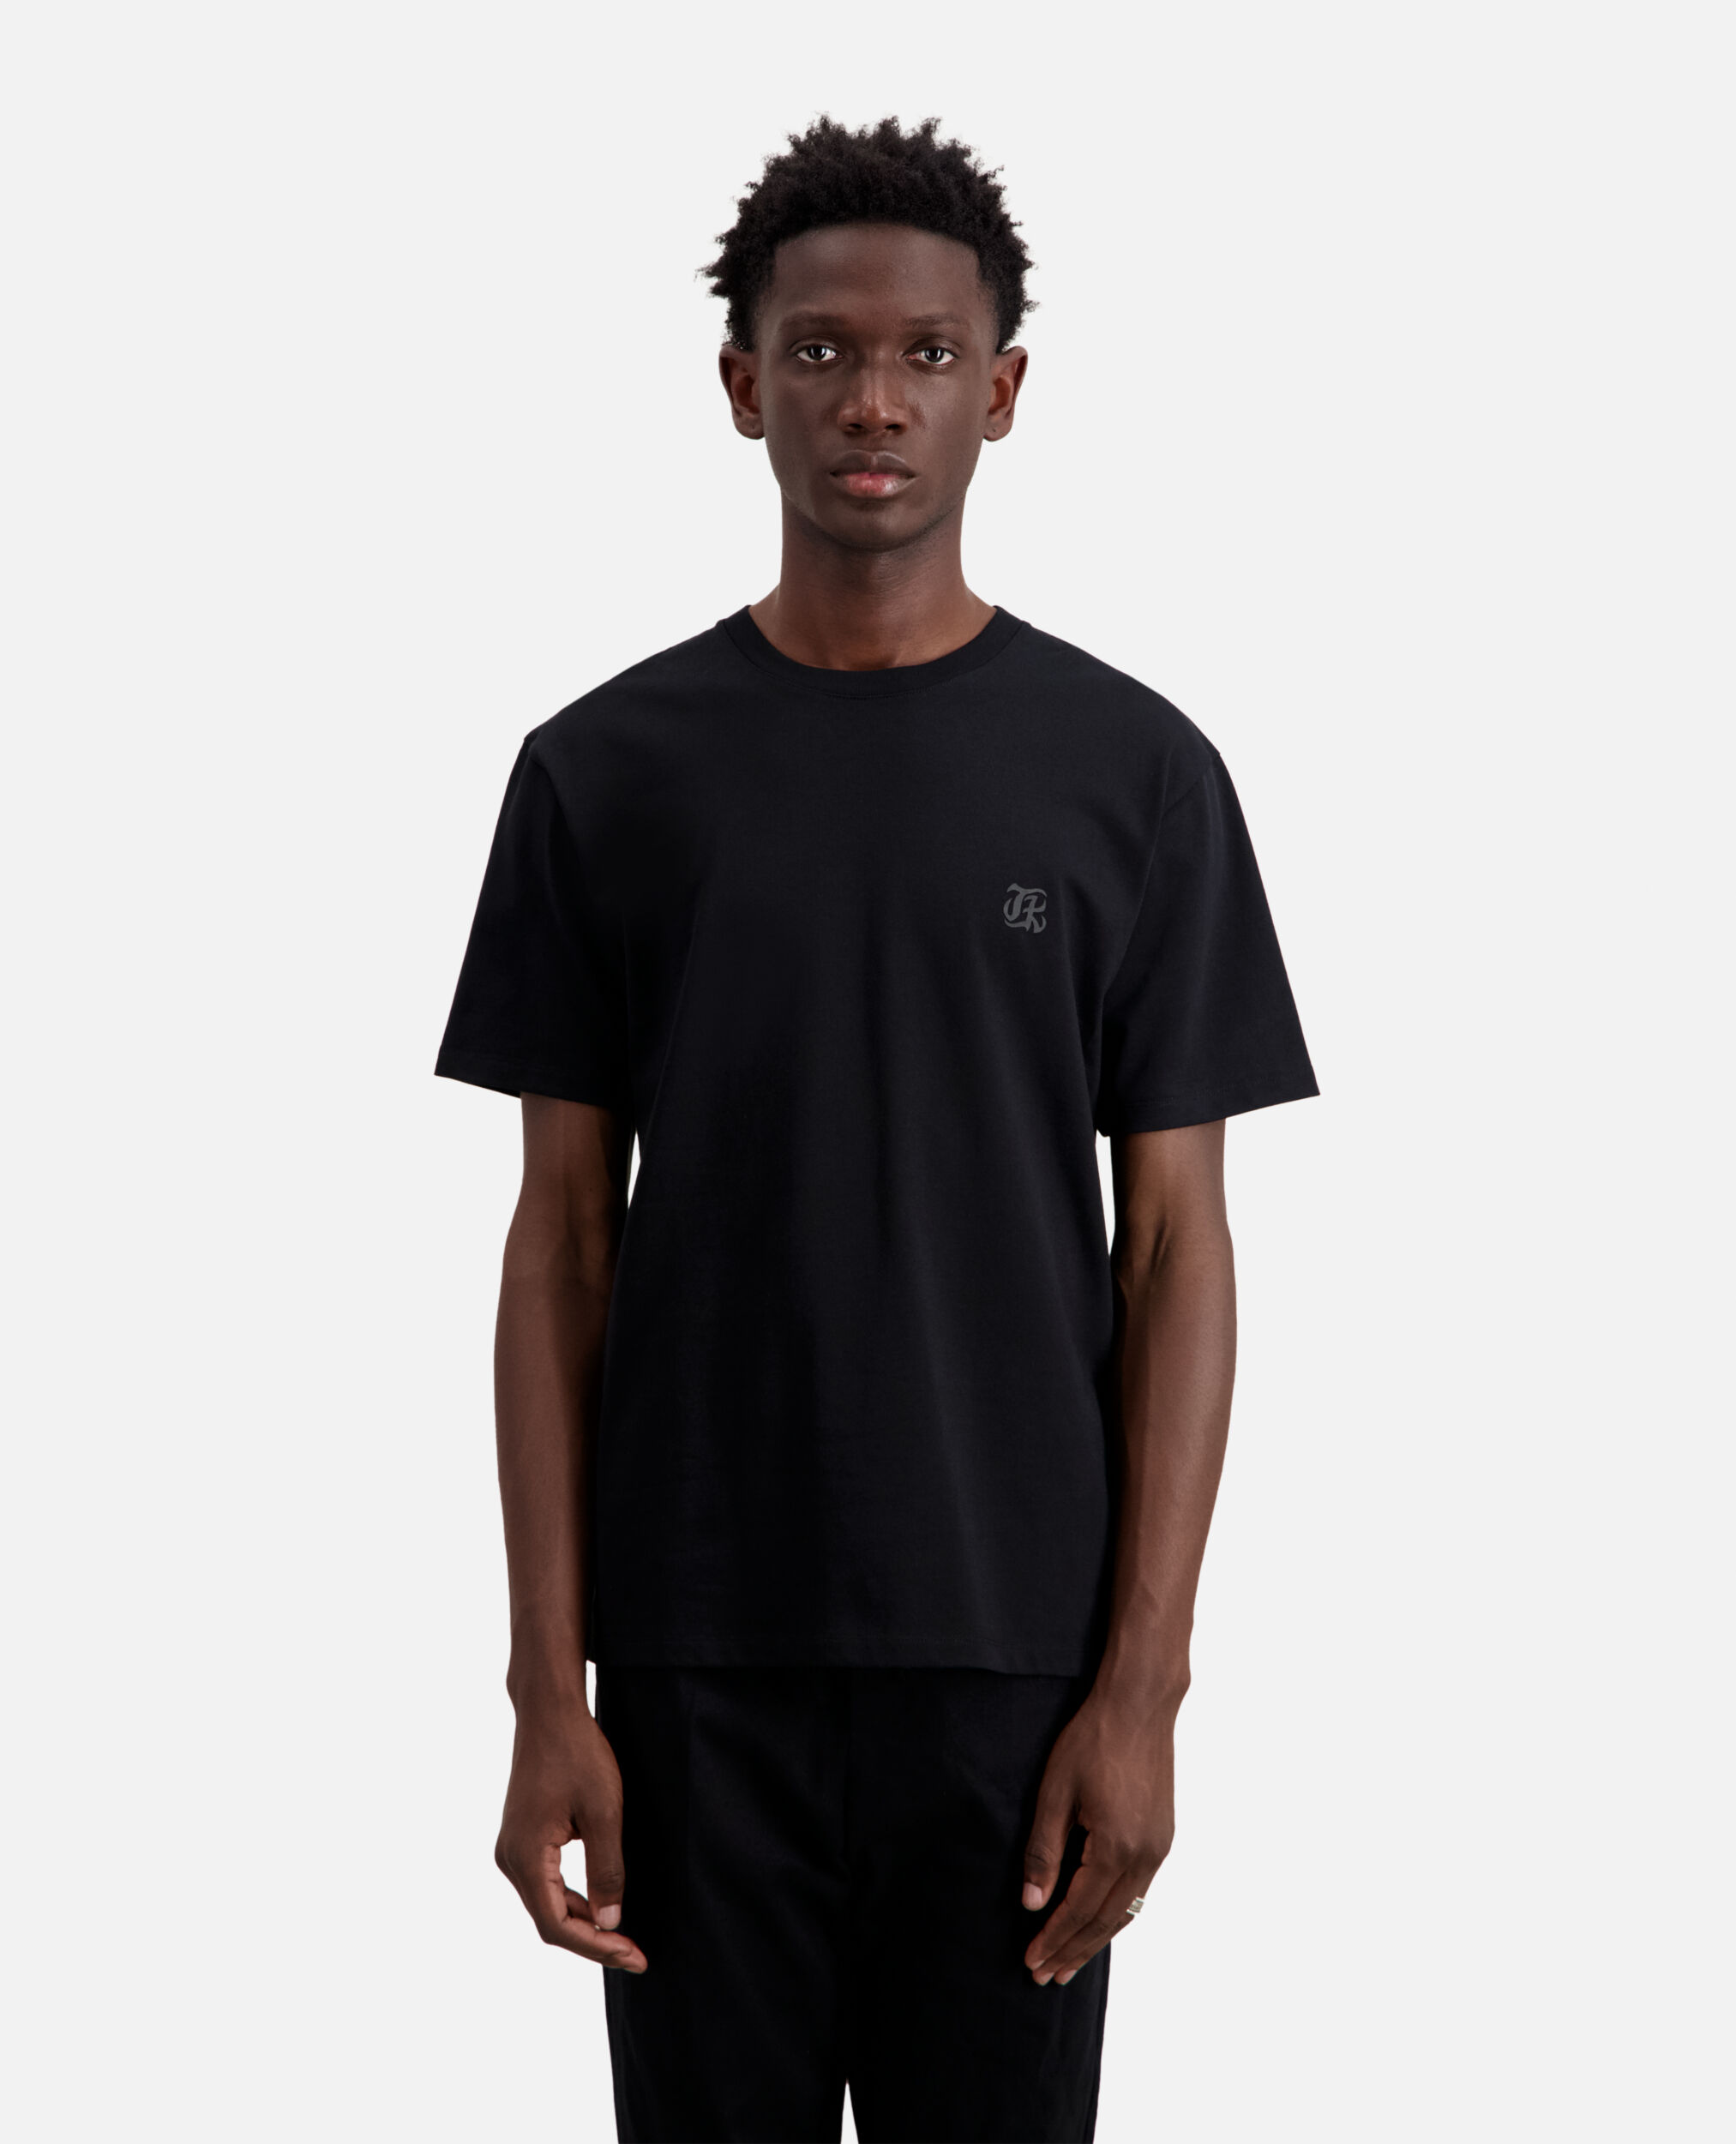 T-shirt noir 15 ans The Kooples, BLACK, hi-res image number null